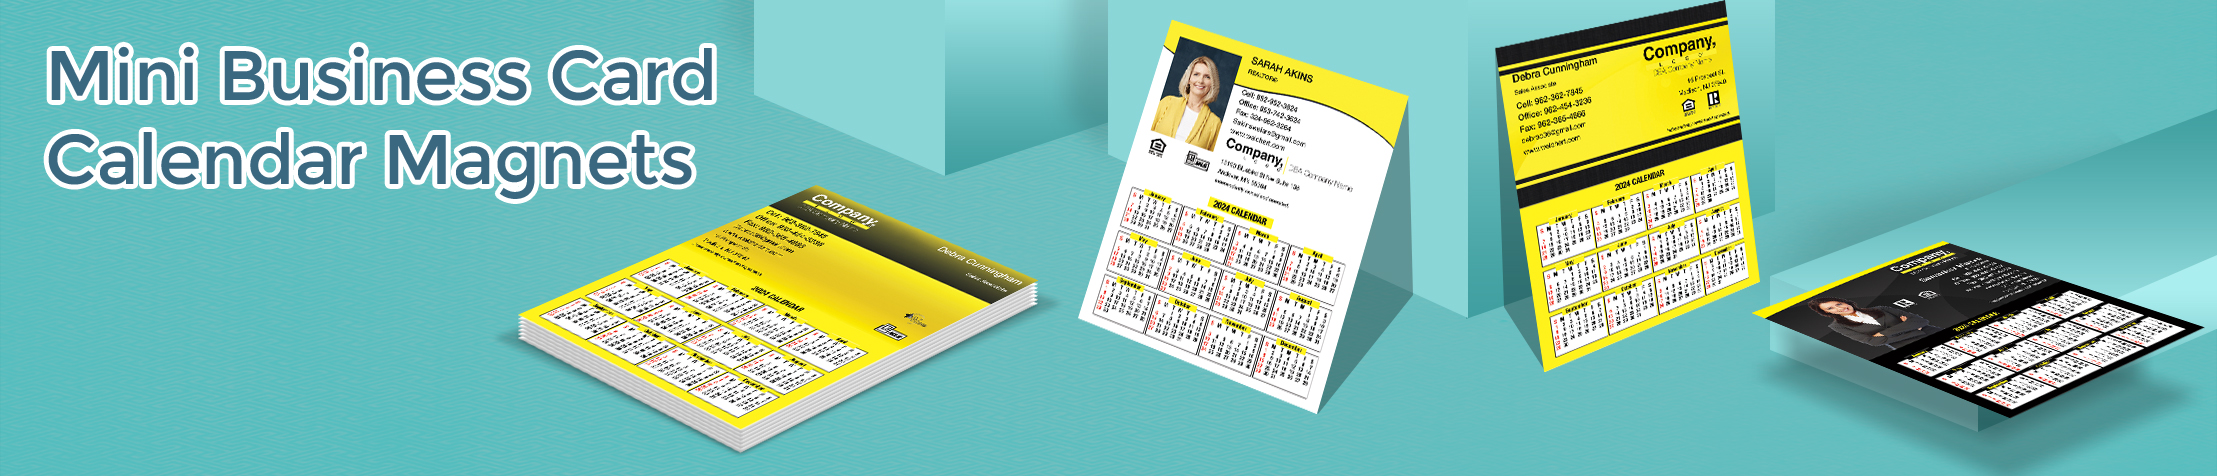 Weichert Real Estate Mini Business Card Calendar Magnets - Weichert  2019 calendars with photo and contact info, 3.5” by 4.25” | BestPrintBuy.com